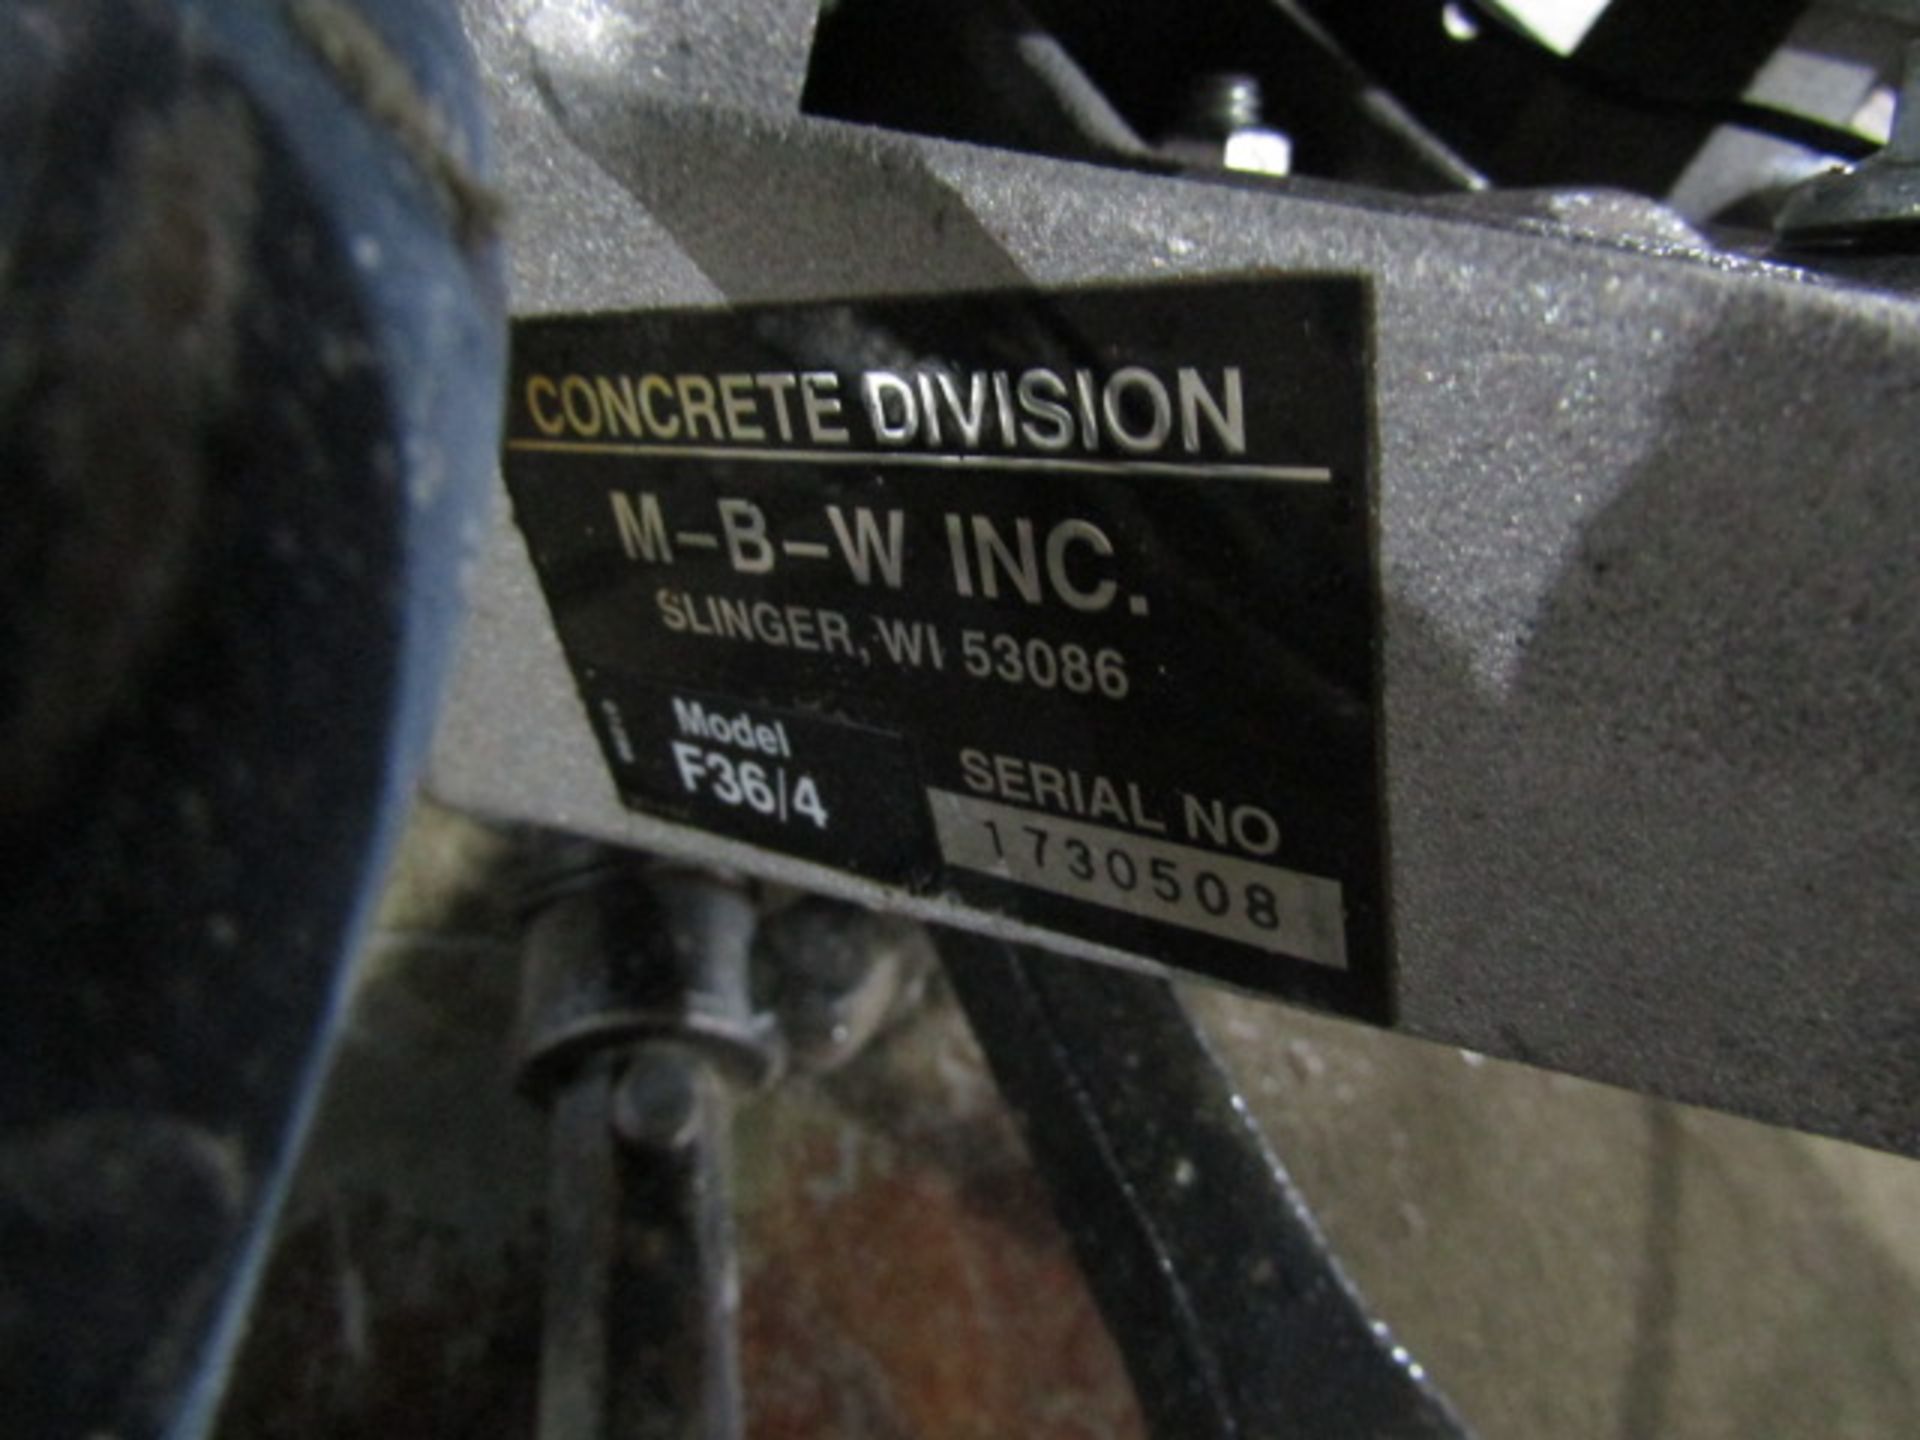 M-B-W, Model #F36/4 Concrete Power Trowel, Serial #1730508, Honda GX240 8.0 - Image 3 of 4